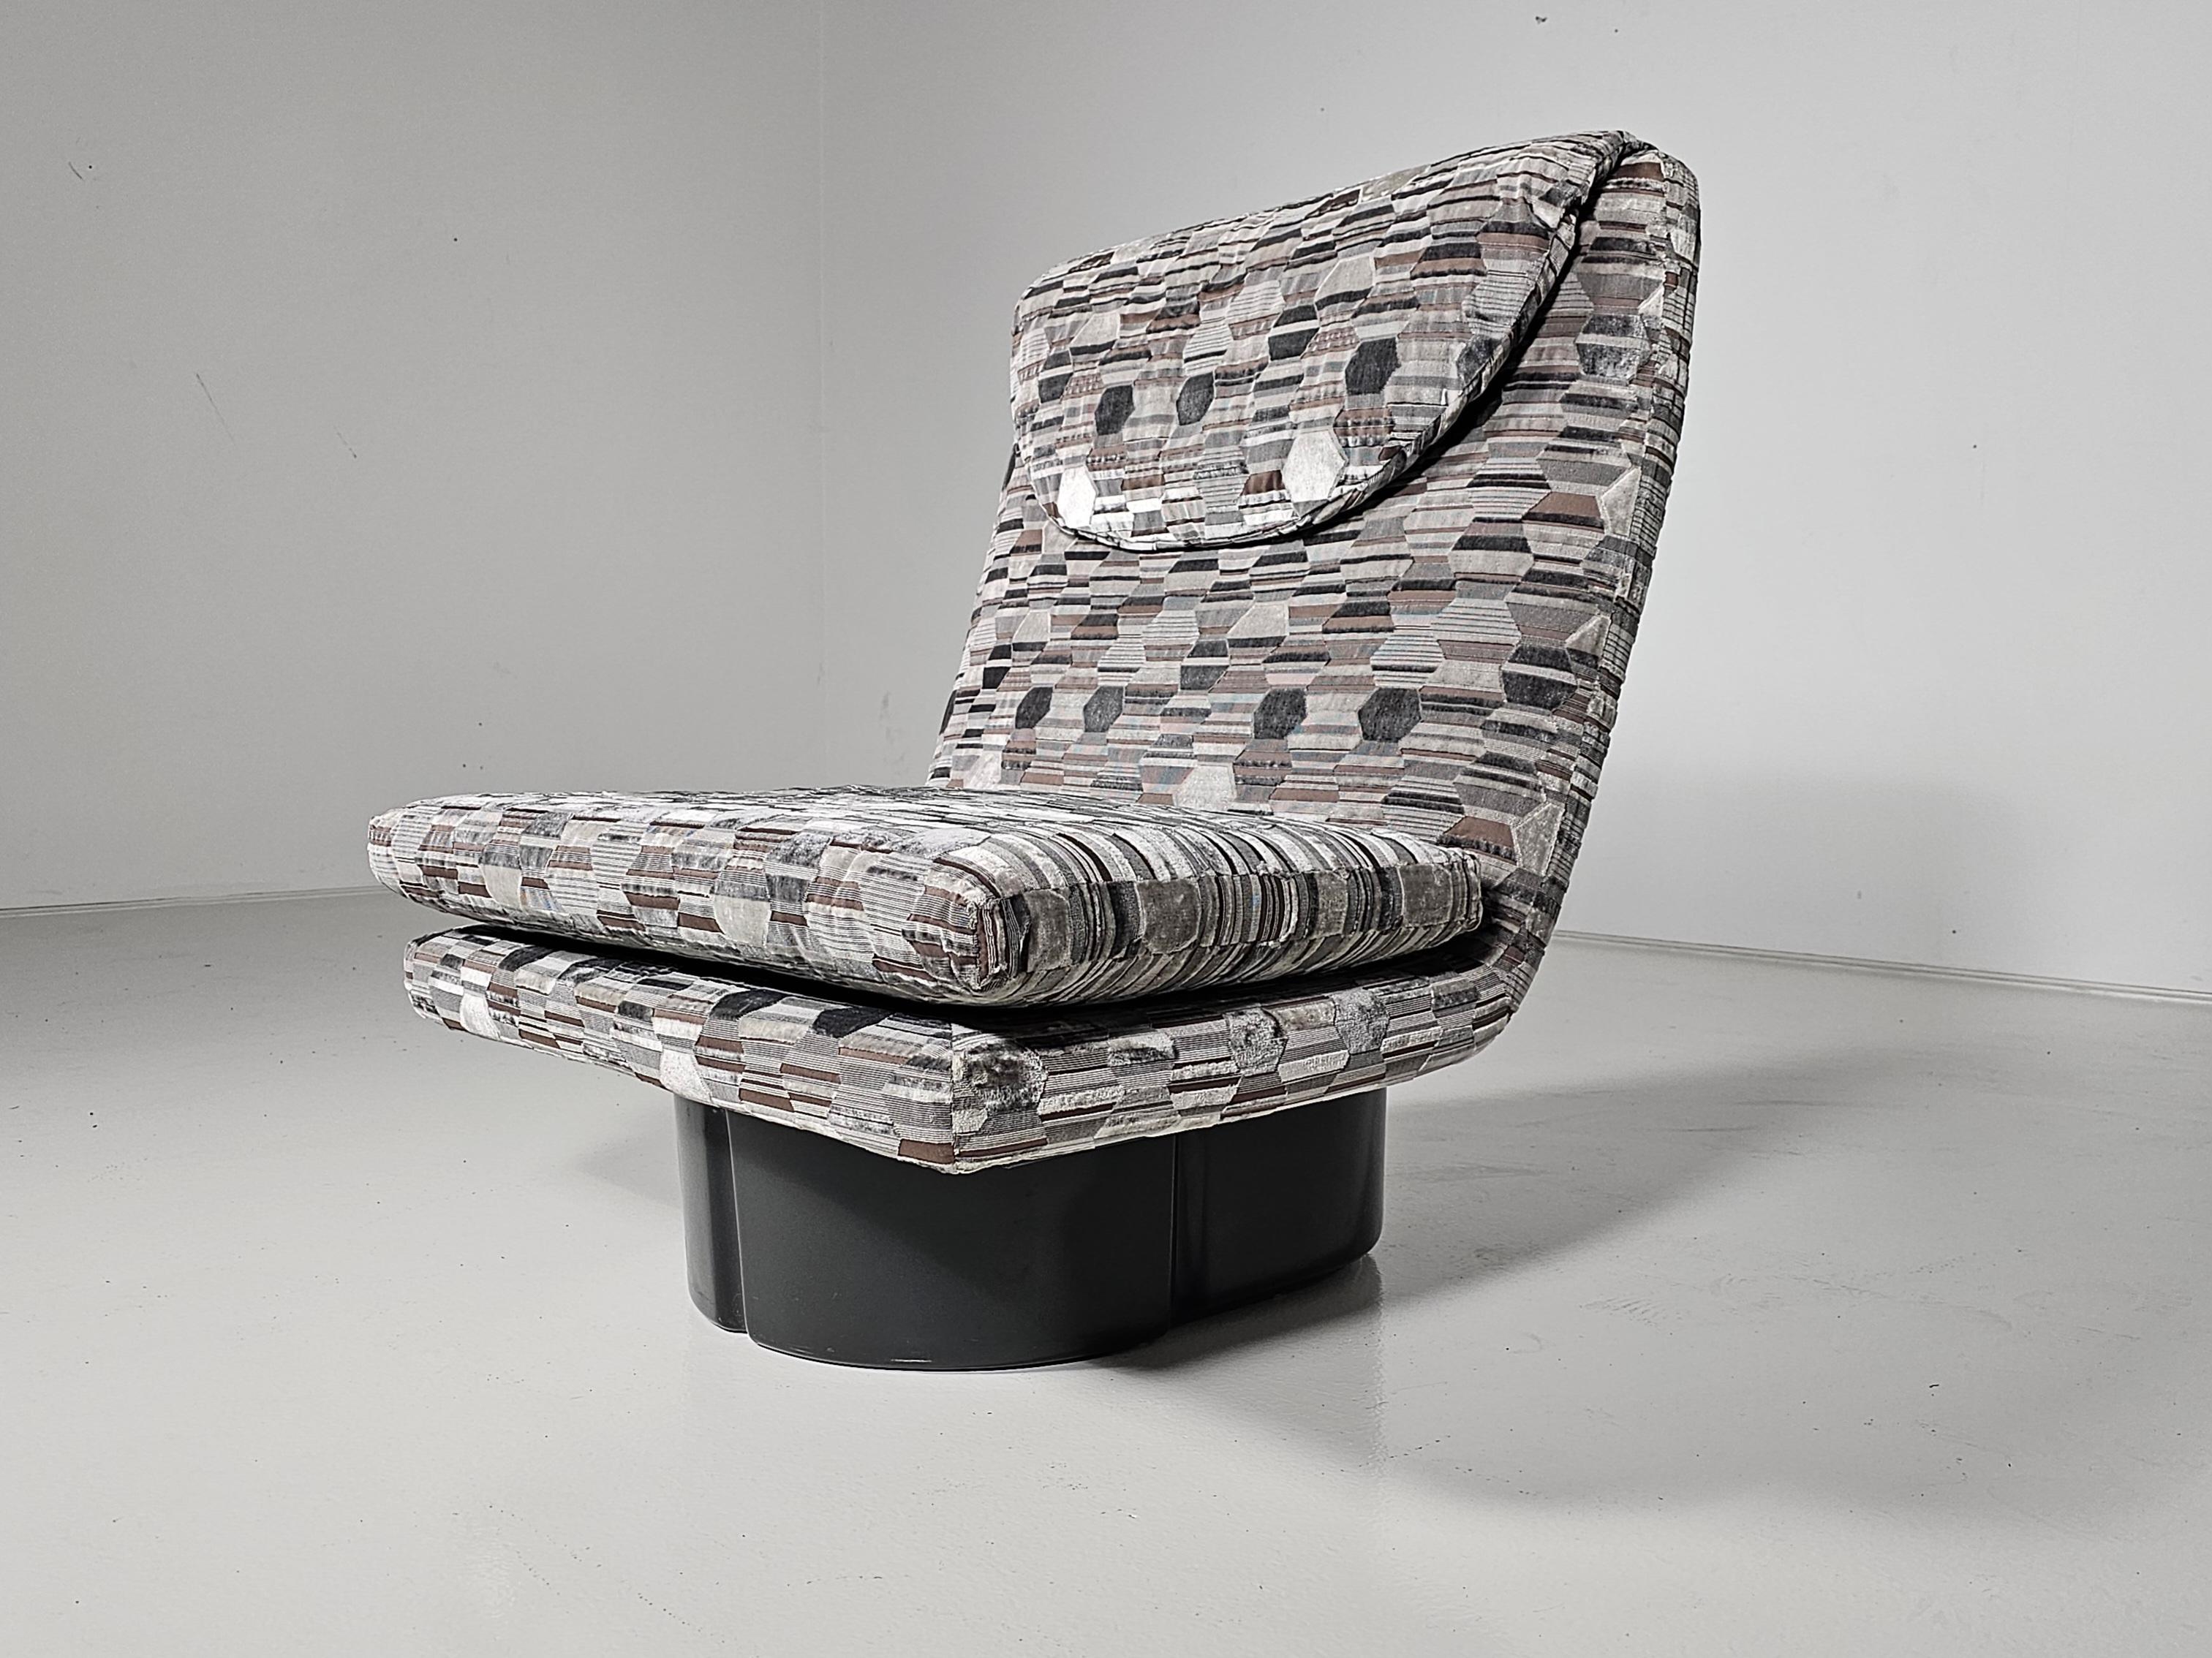 Chaise longue confortable faisant partie de la série 175 conçue par AT&T et G&T. Vitelli. Rembourré dans un superbe tissu texturé Zinc. Avec base en acrylique moulé gris acier. Super confortable. Rayures visibles sur le cadre acrylique.

